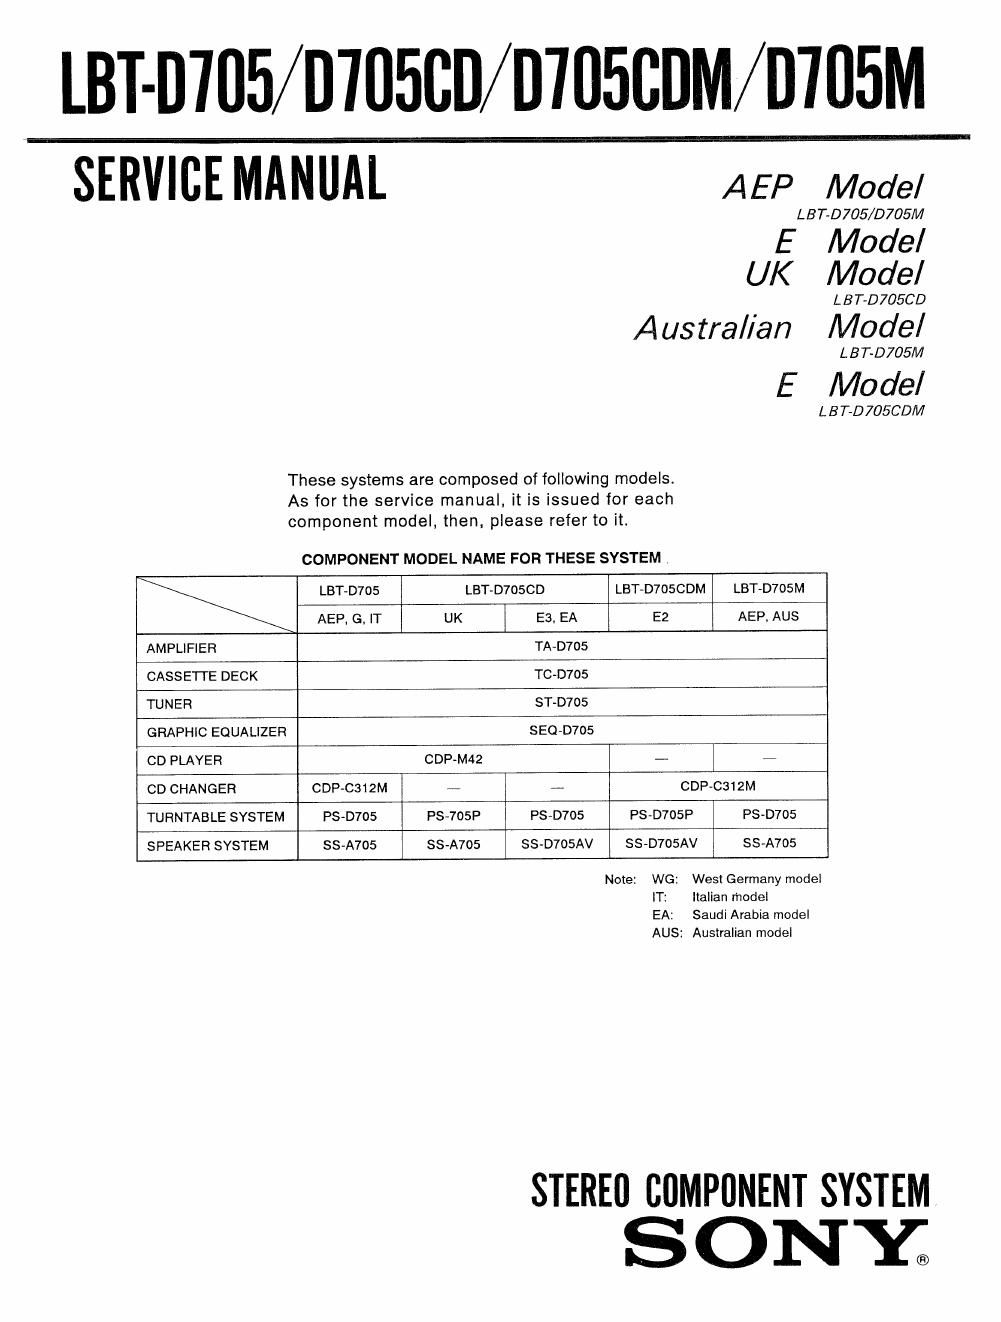 sony lbt d 705 cdm service manual